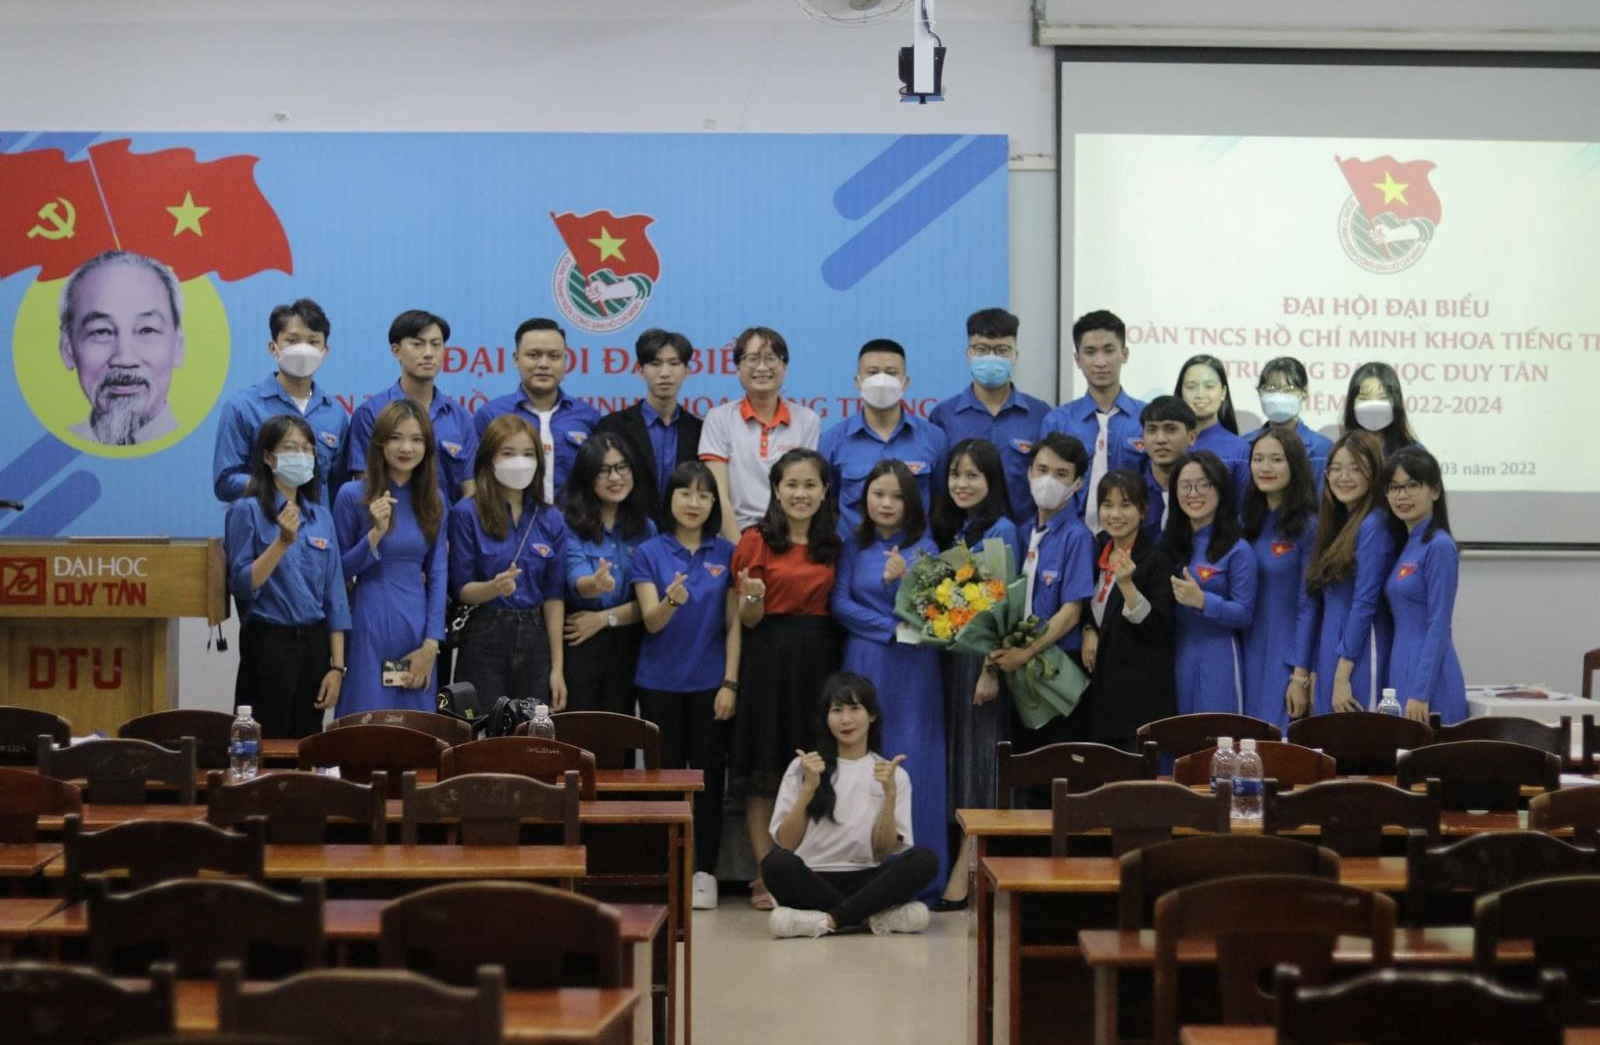 Đại hội đại biểu Đoàn TNCS Hồ Chí Minh Khoa Tiếng Trung - Đại học Duy Tân Nhiệm kỳ 2022-2024